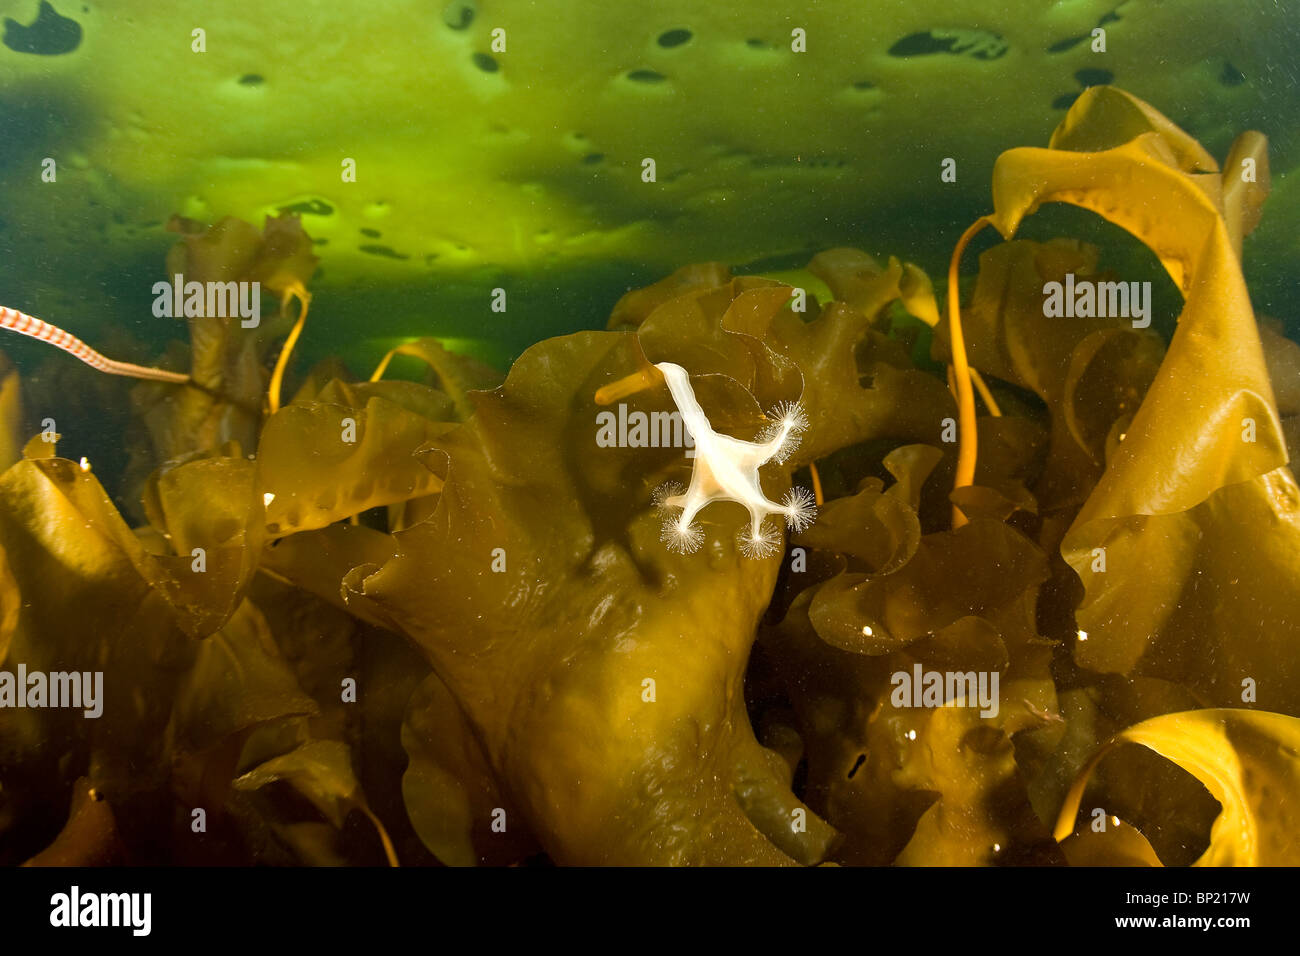 Stalked Jellyfish on Kelp, Lucernaria quadricornis, White Sea, Karelia, Russia Stock Photo